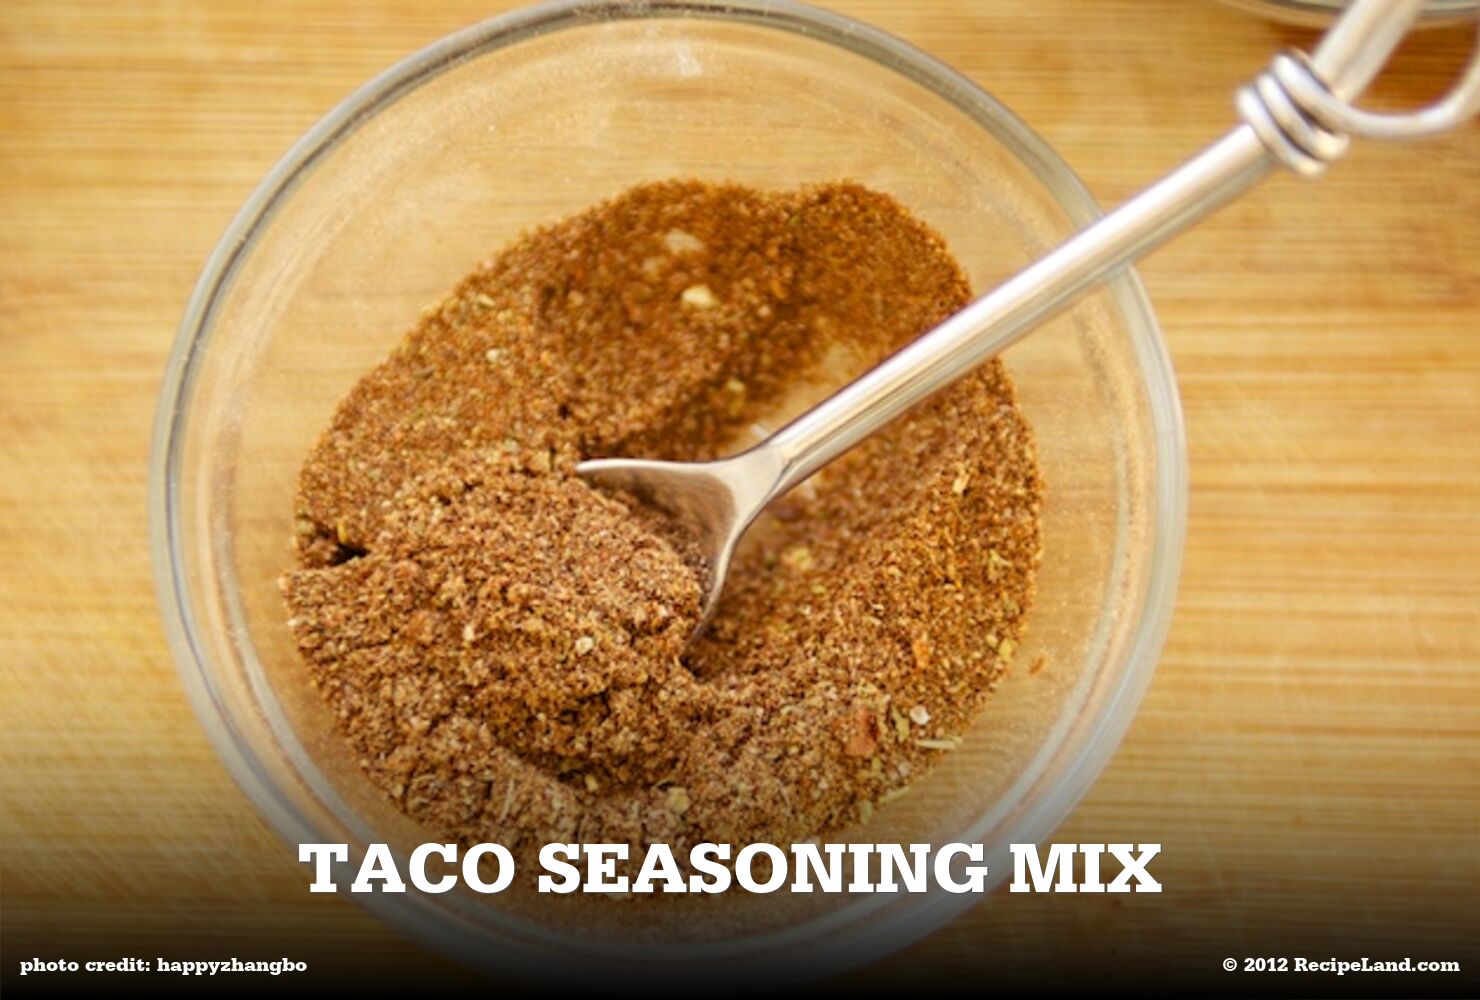 Homemade taco seasoning mix recipe